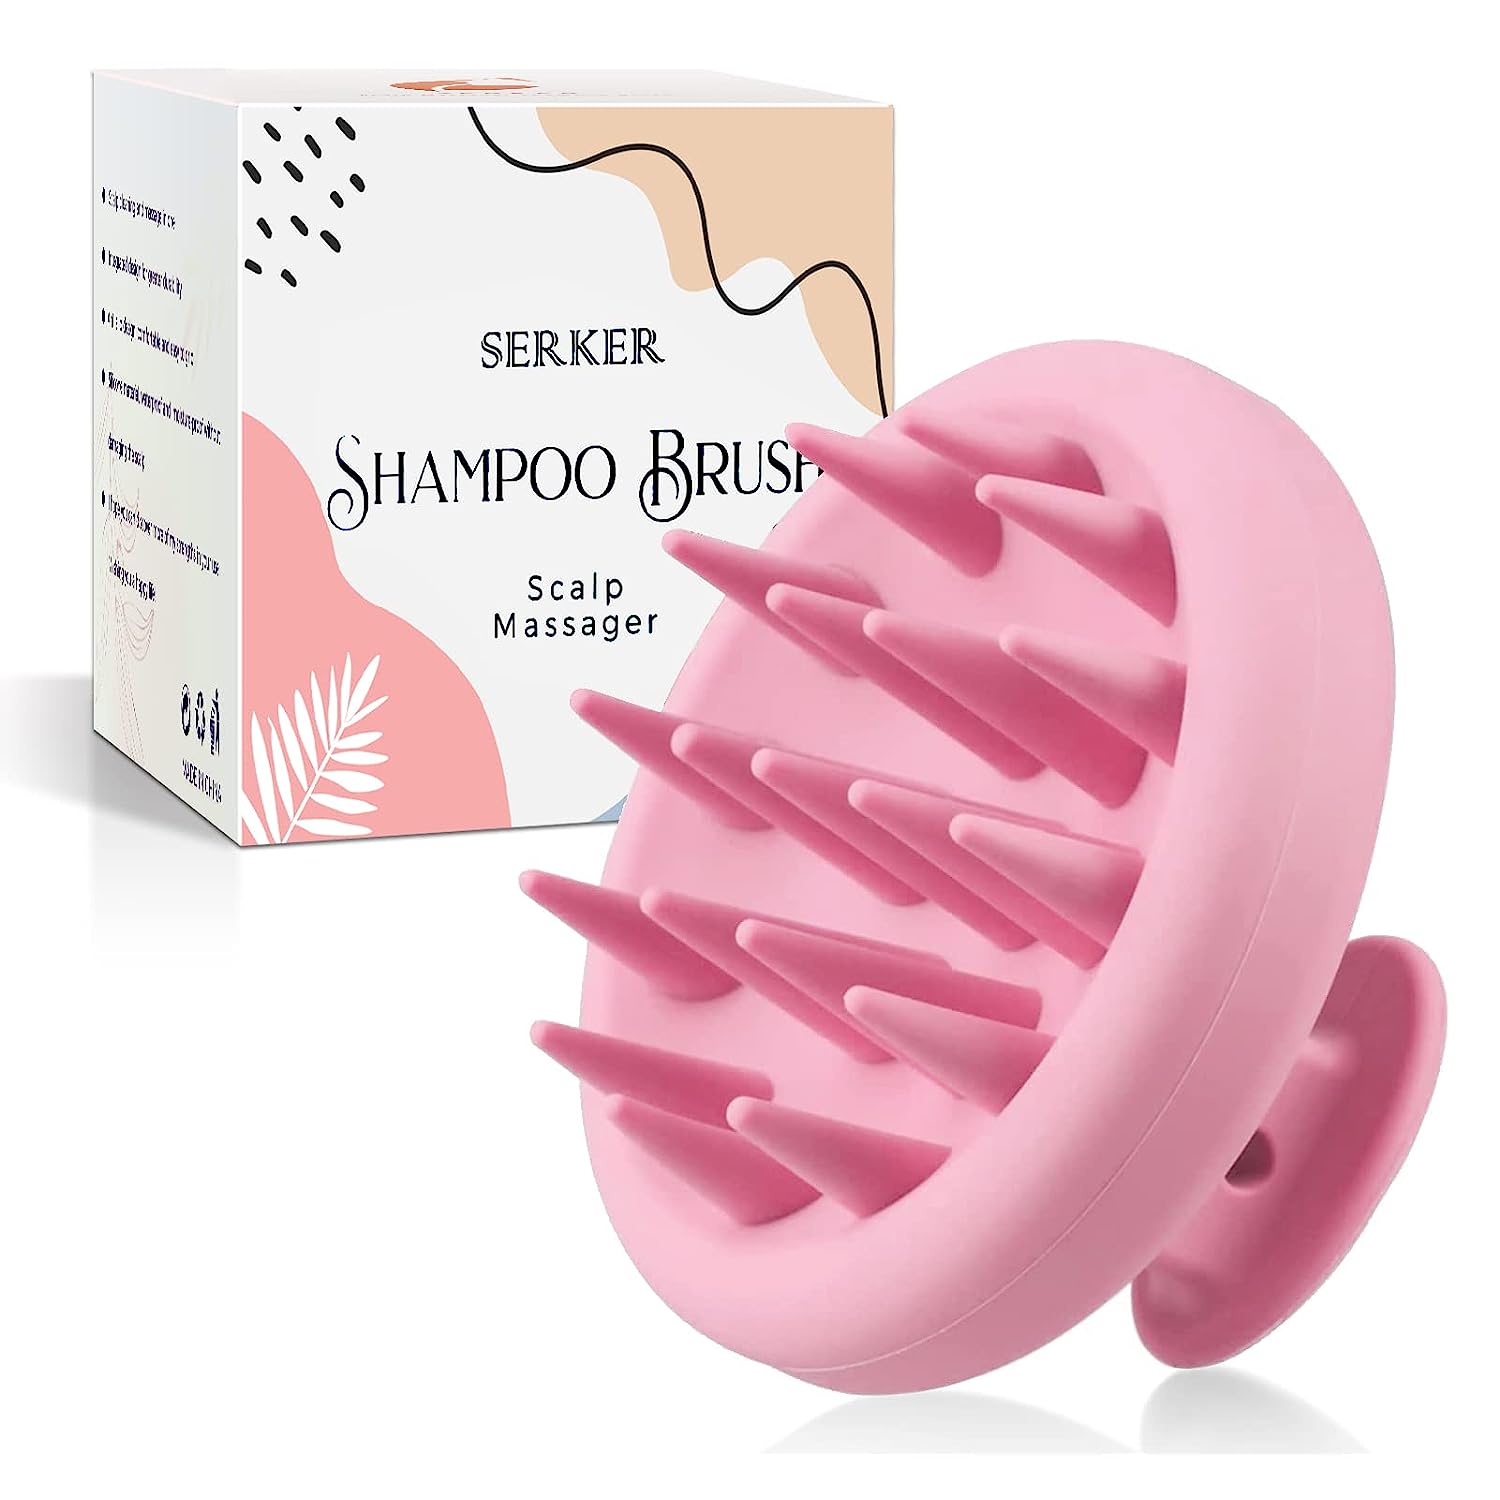 Serker Scalp Massage Brush Shampoo Brush, Silicone Shampoo Hair Brush, Scalp Massager for Exoliating and Stimulating Hair Growth, Dandruff Reduction, Head Massage [Wet & Dry] (Pink)